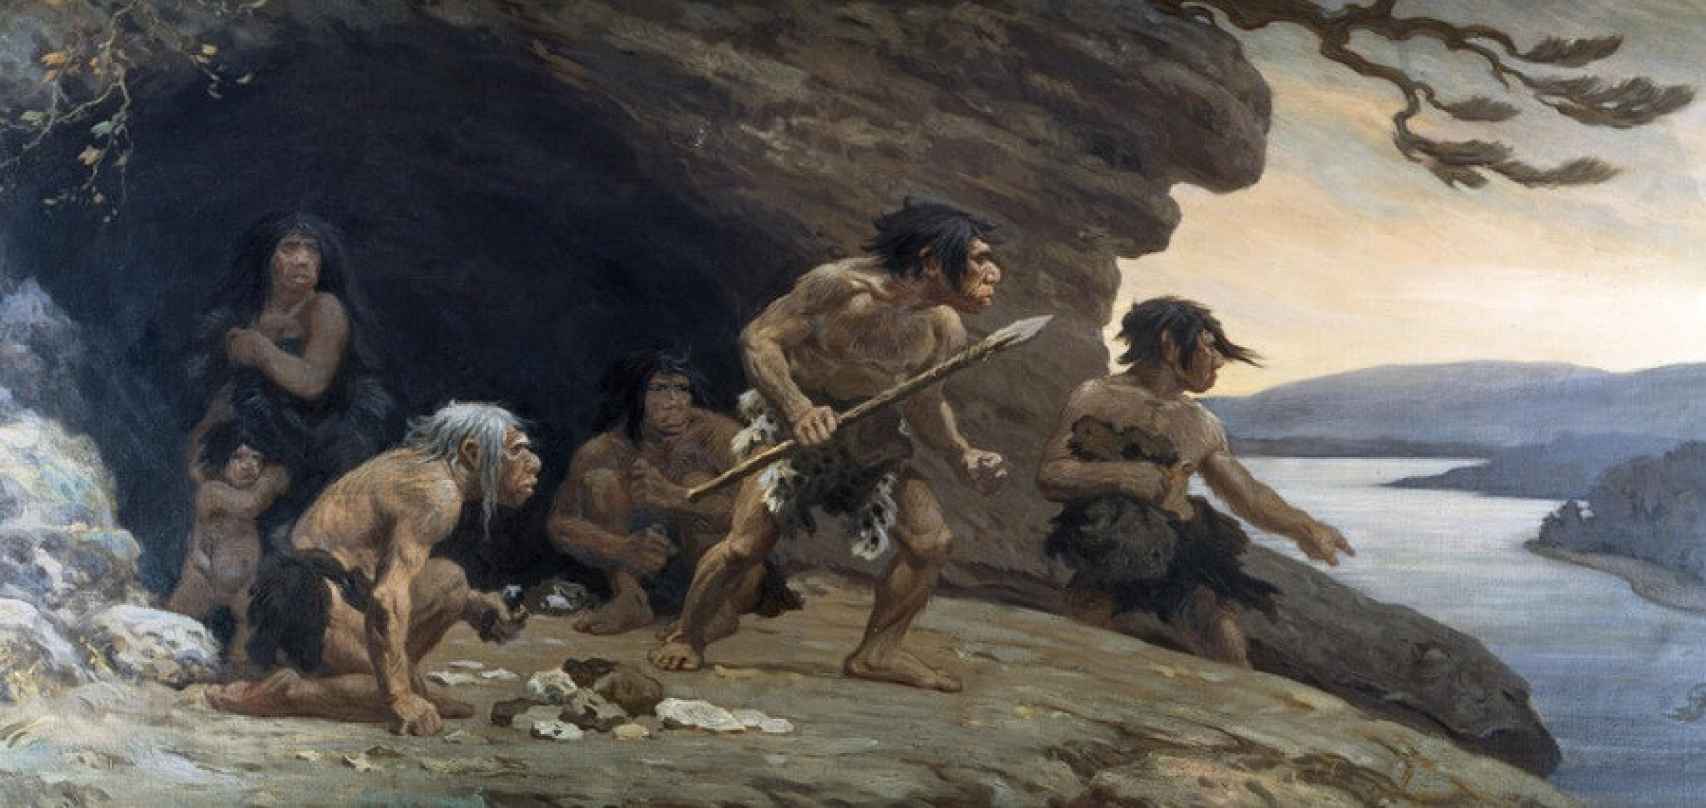 hallazgo sorprendente: la desconocida capacidad de los neandertales que era exclusiva de los sapiens